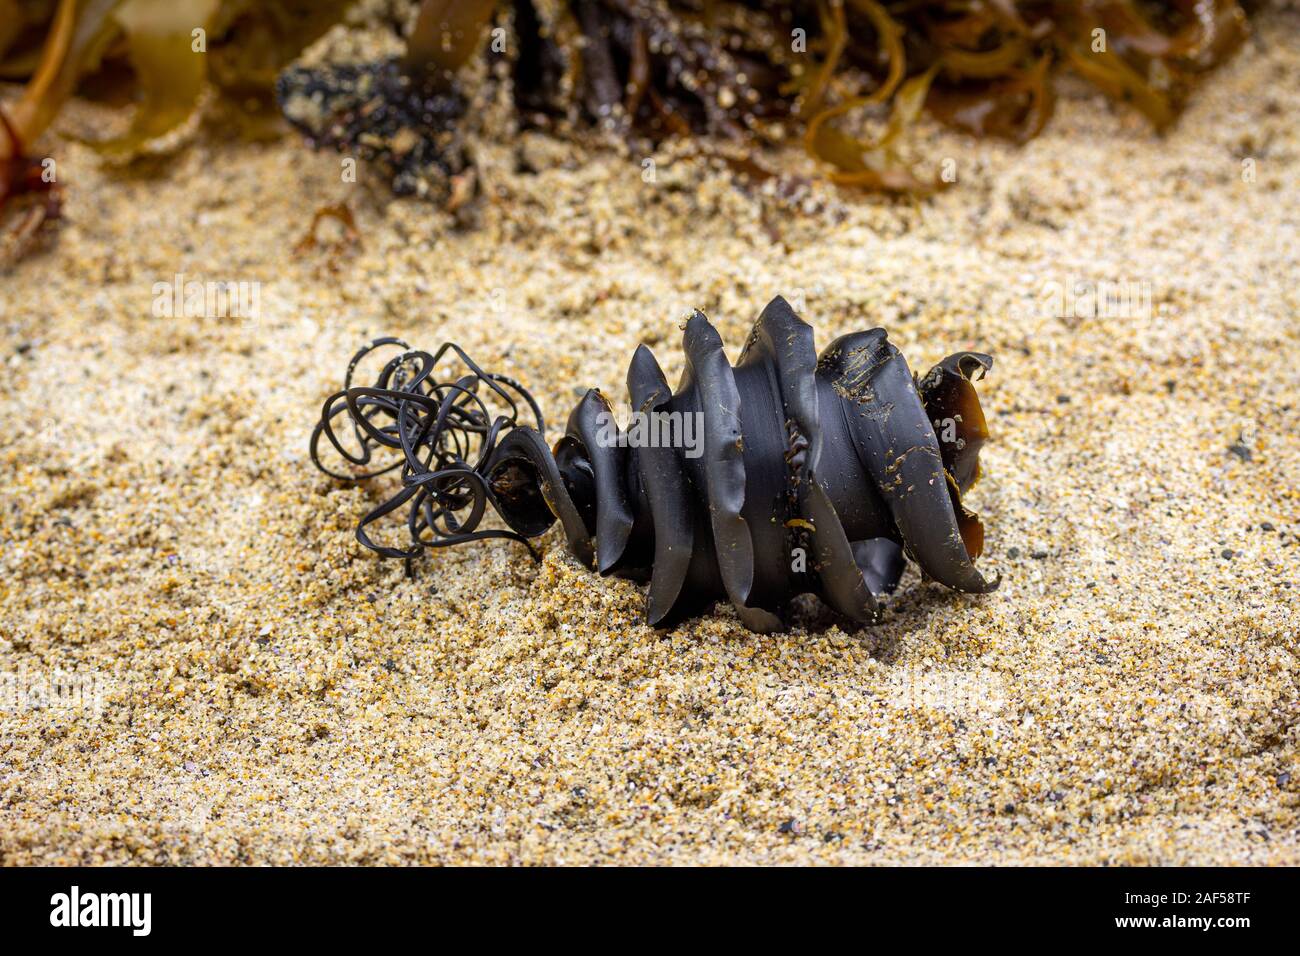 Chiudere fino a spirale di uova di squalo caso dalla famiglia dello squalo Heterodontidae lavato fino attaccato ad alghe trovato sulla spiaggia. Port Jackson squalo, Heterodontus Foto Stock